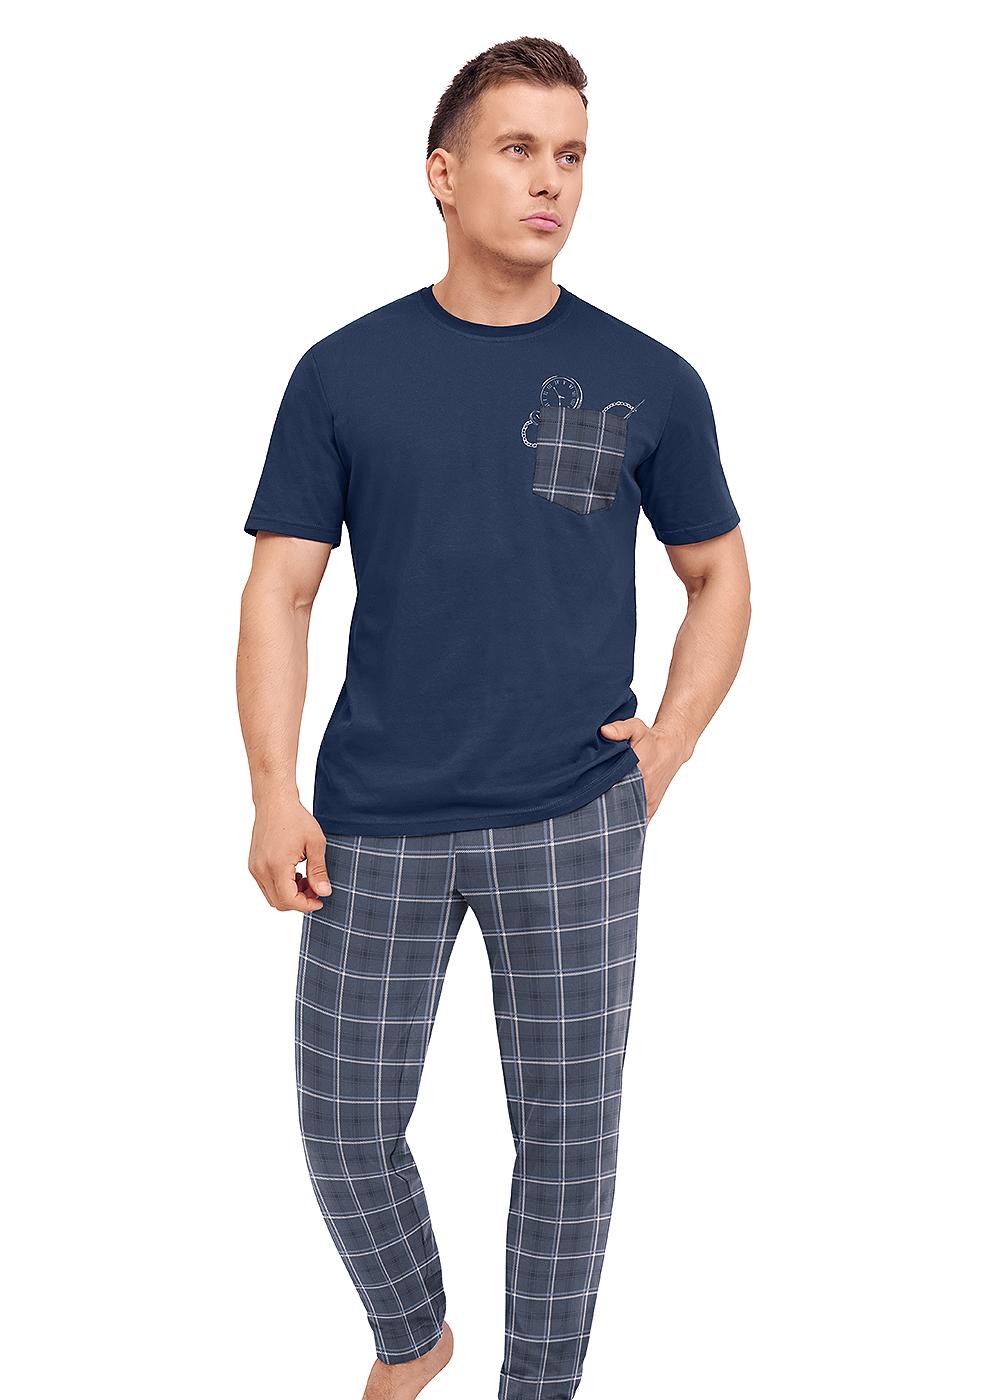 Комплект футболка + брюки для мужчин Clever 173226